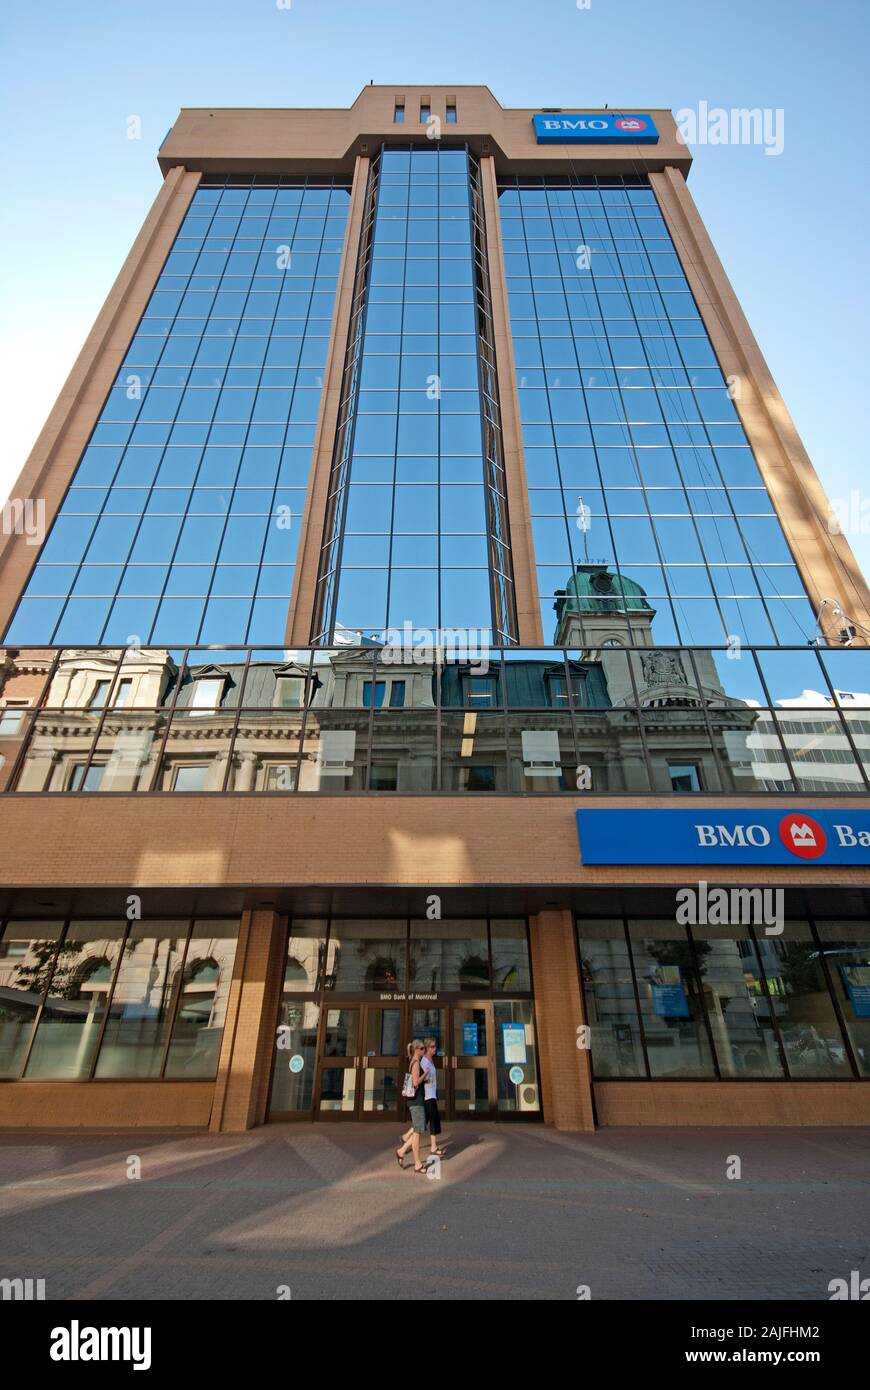 BMO (Bank of Montreal) skyscraper in Regina, Saskatchewan, Canada Stock Photo